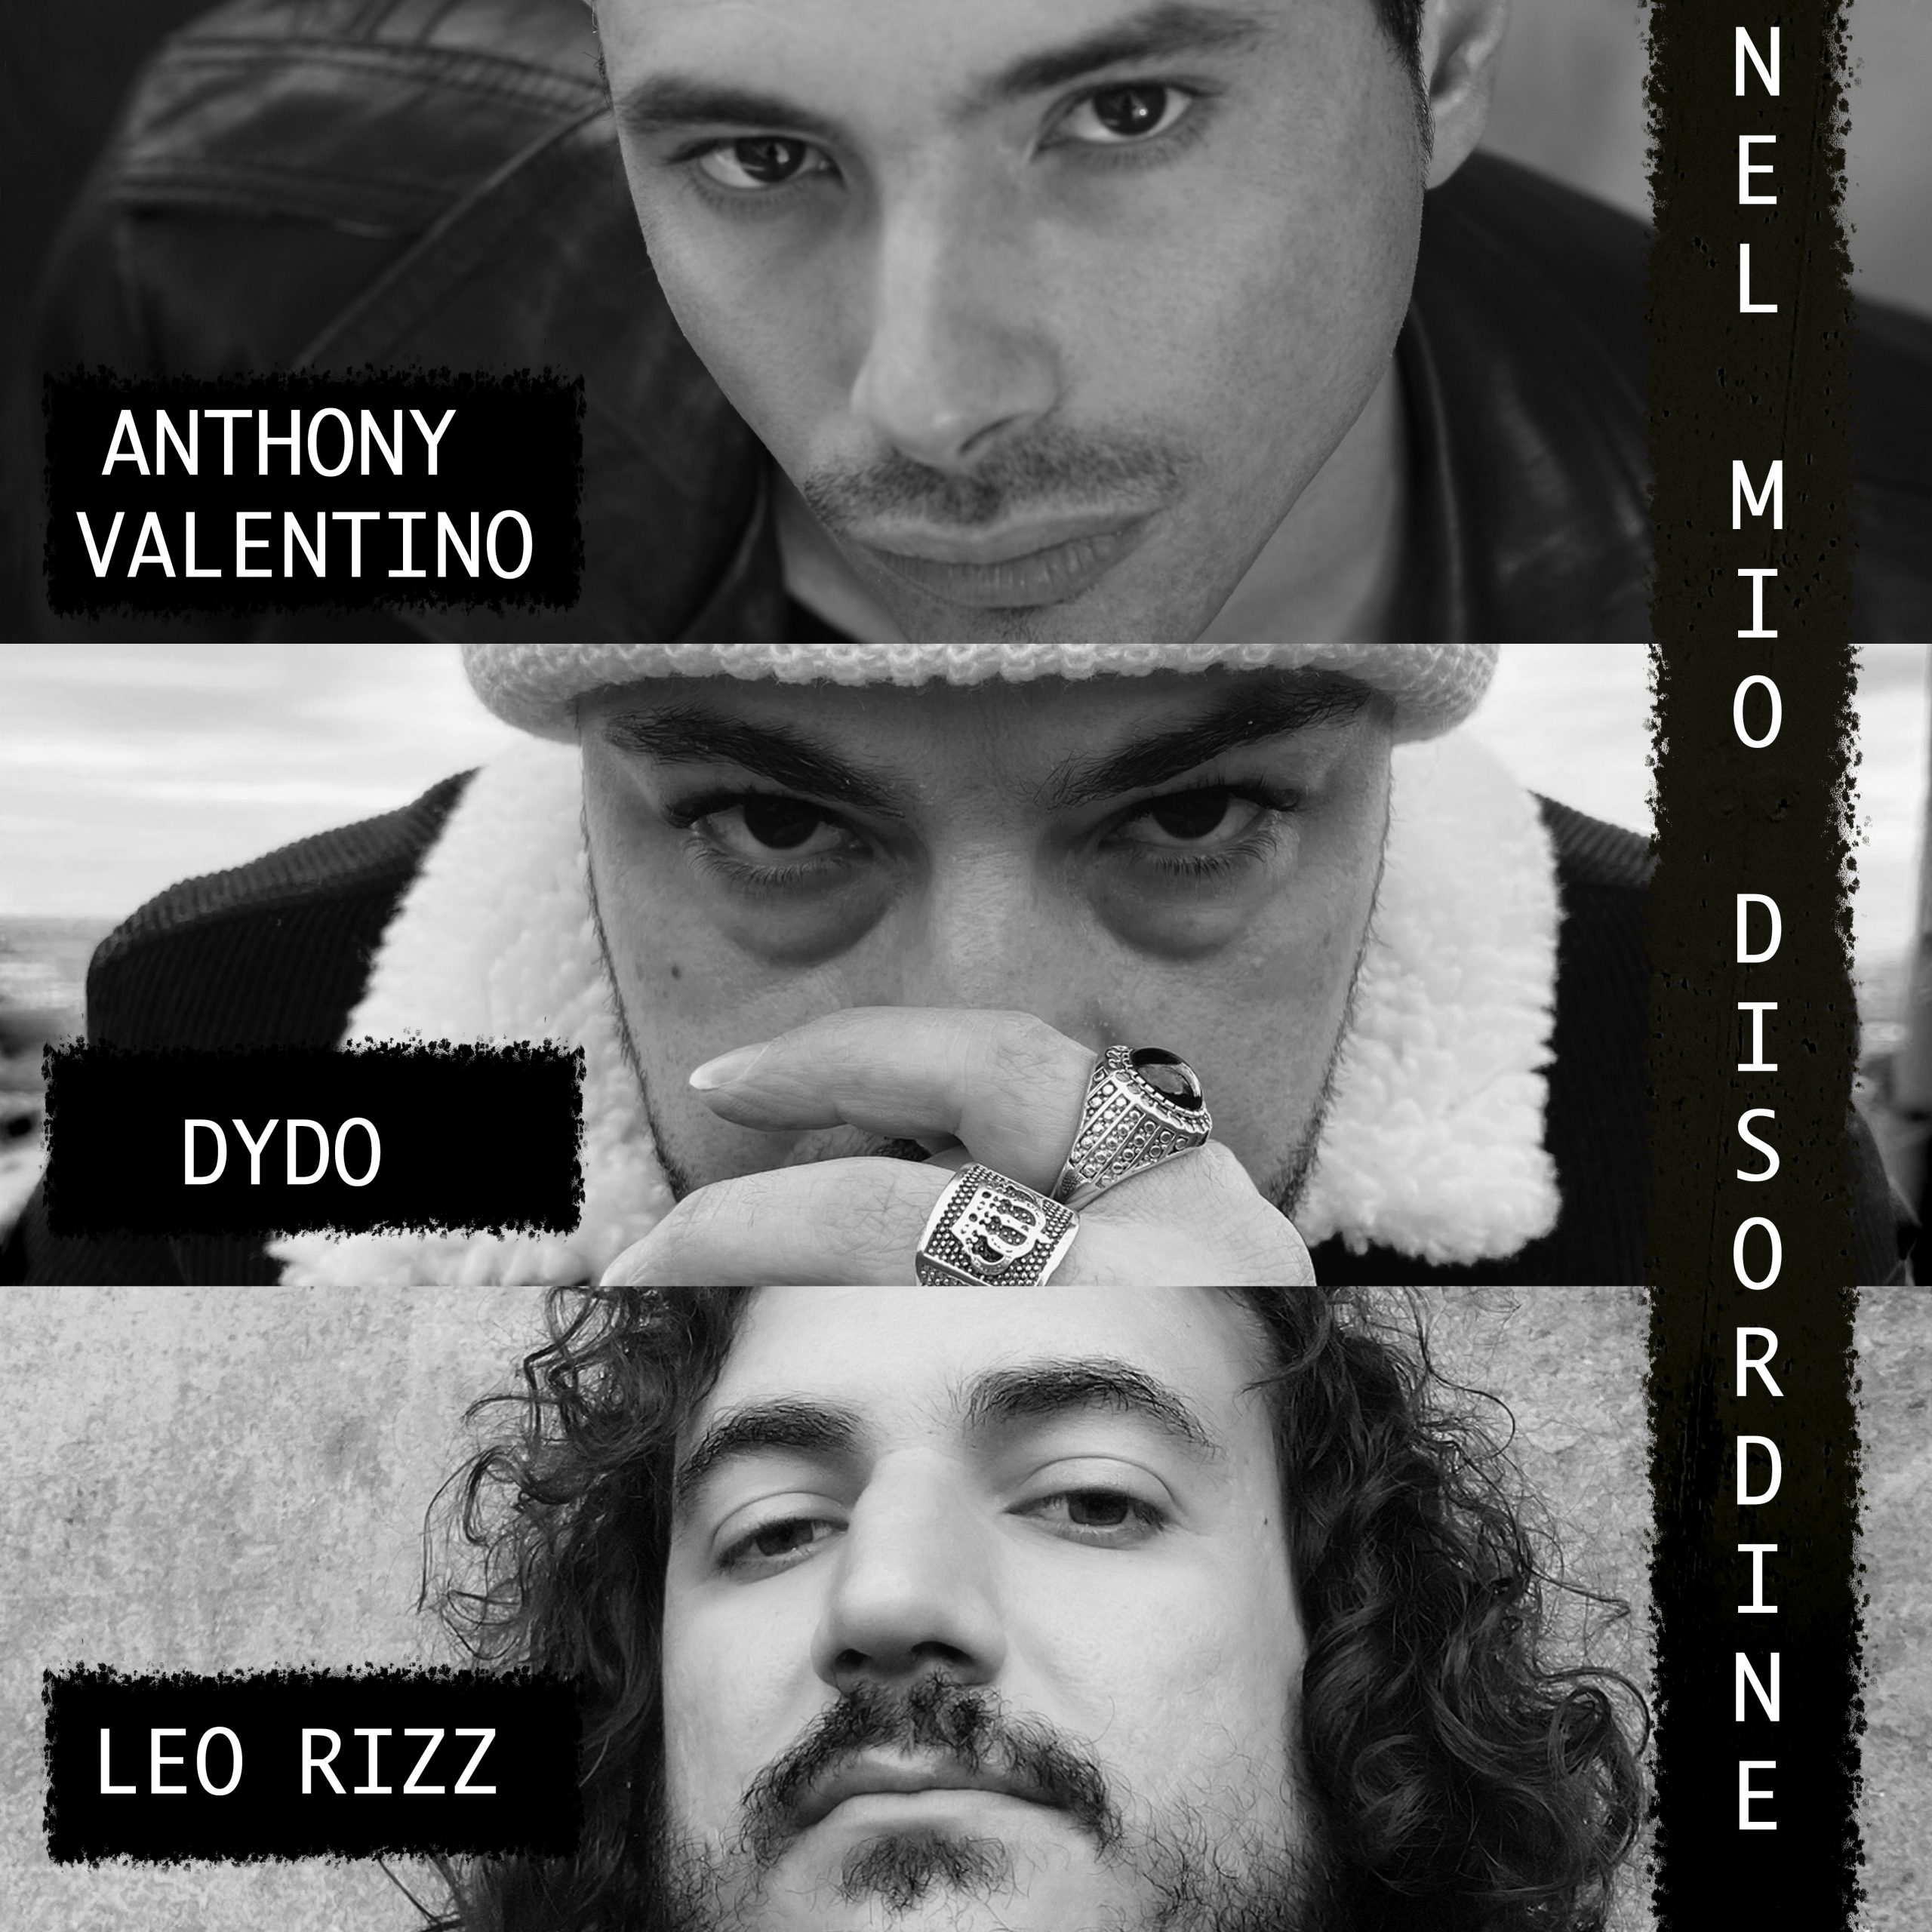 Esce in digitale il nuovo singolo firmato Dydo, Anthony Valentino, Leo Rizz e Alfredo Grassi